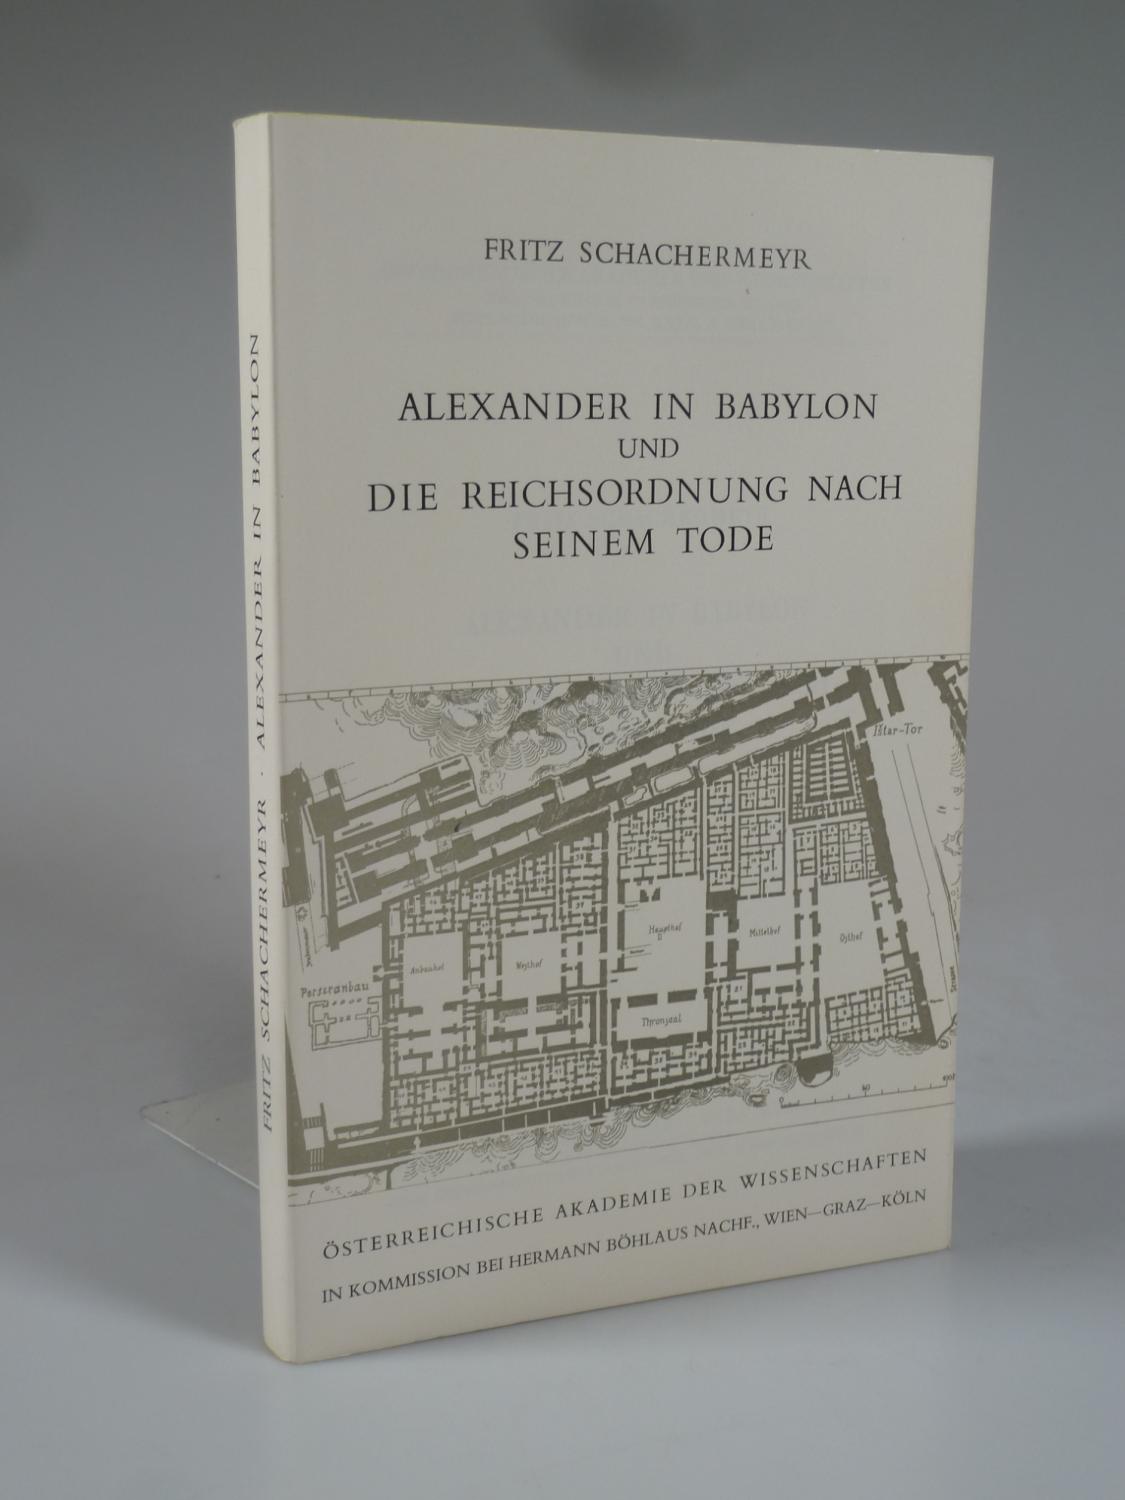 Alexander in Babylon und die Reichsordnung nach seinem Tode. - SCHACHERMEYR, Fritz.